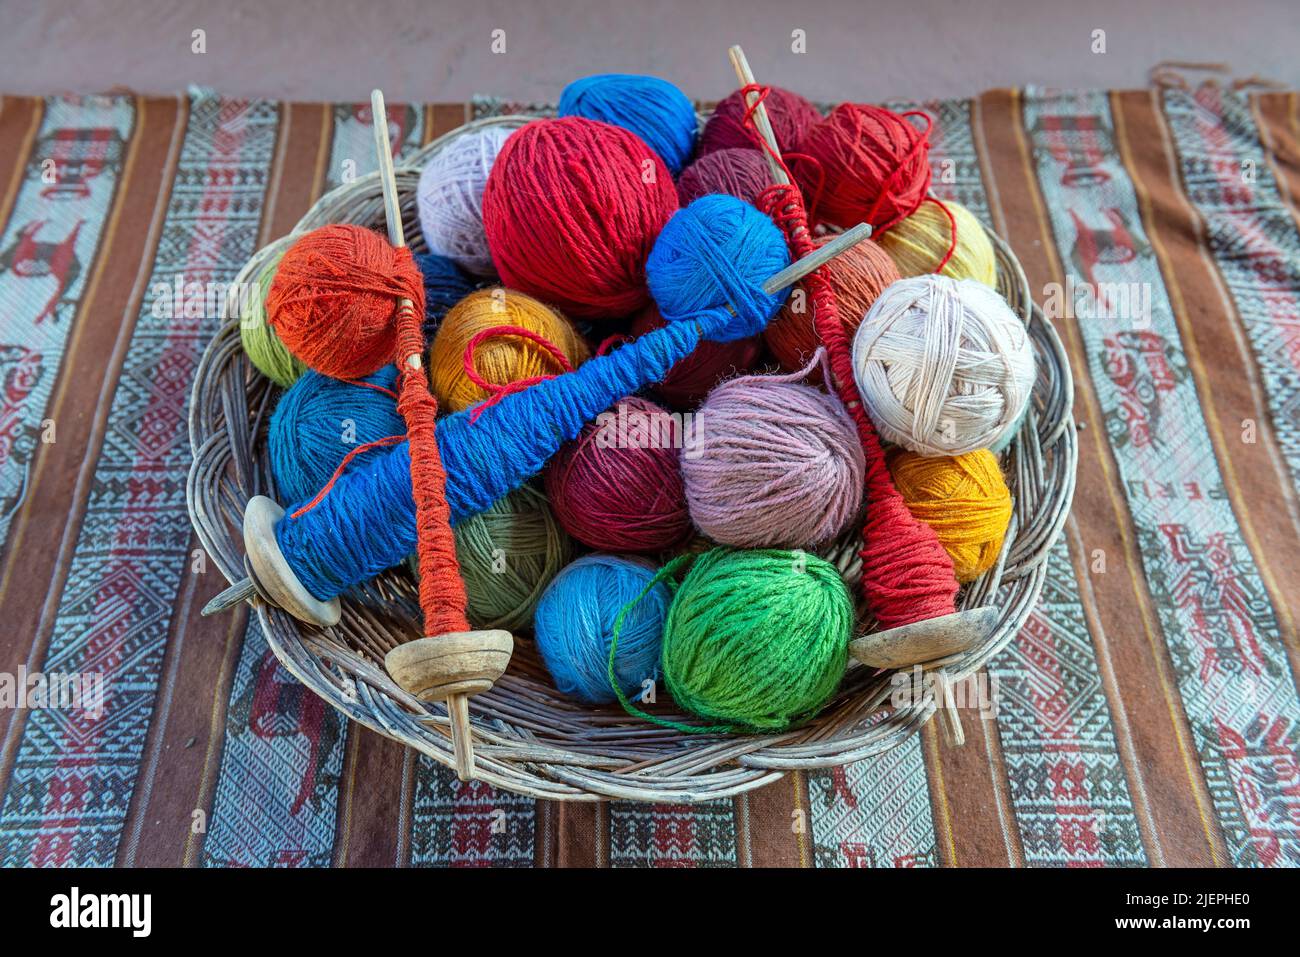 Vista superior de una cesta con bolas de lana de alpaca y husos hilados en un centro de producción textil en Cusco, Perú. Foto de stock